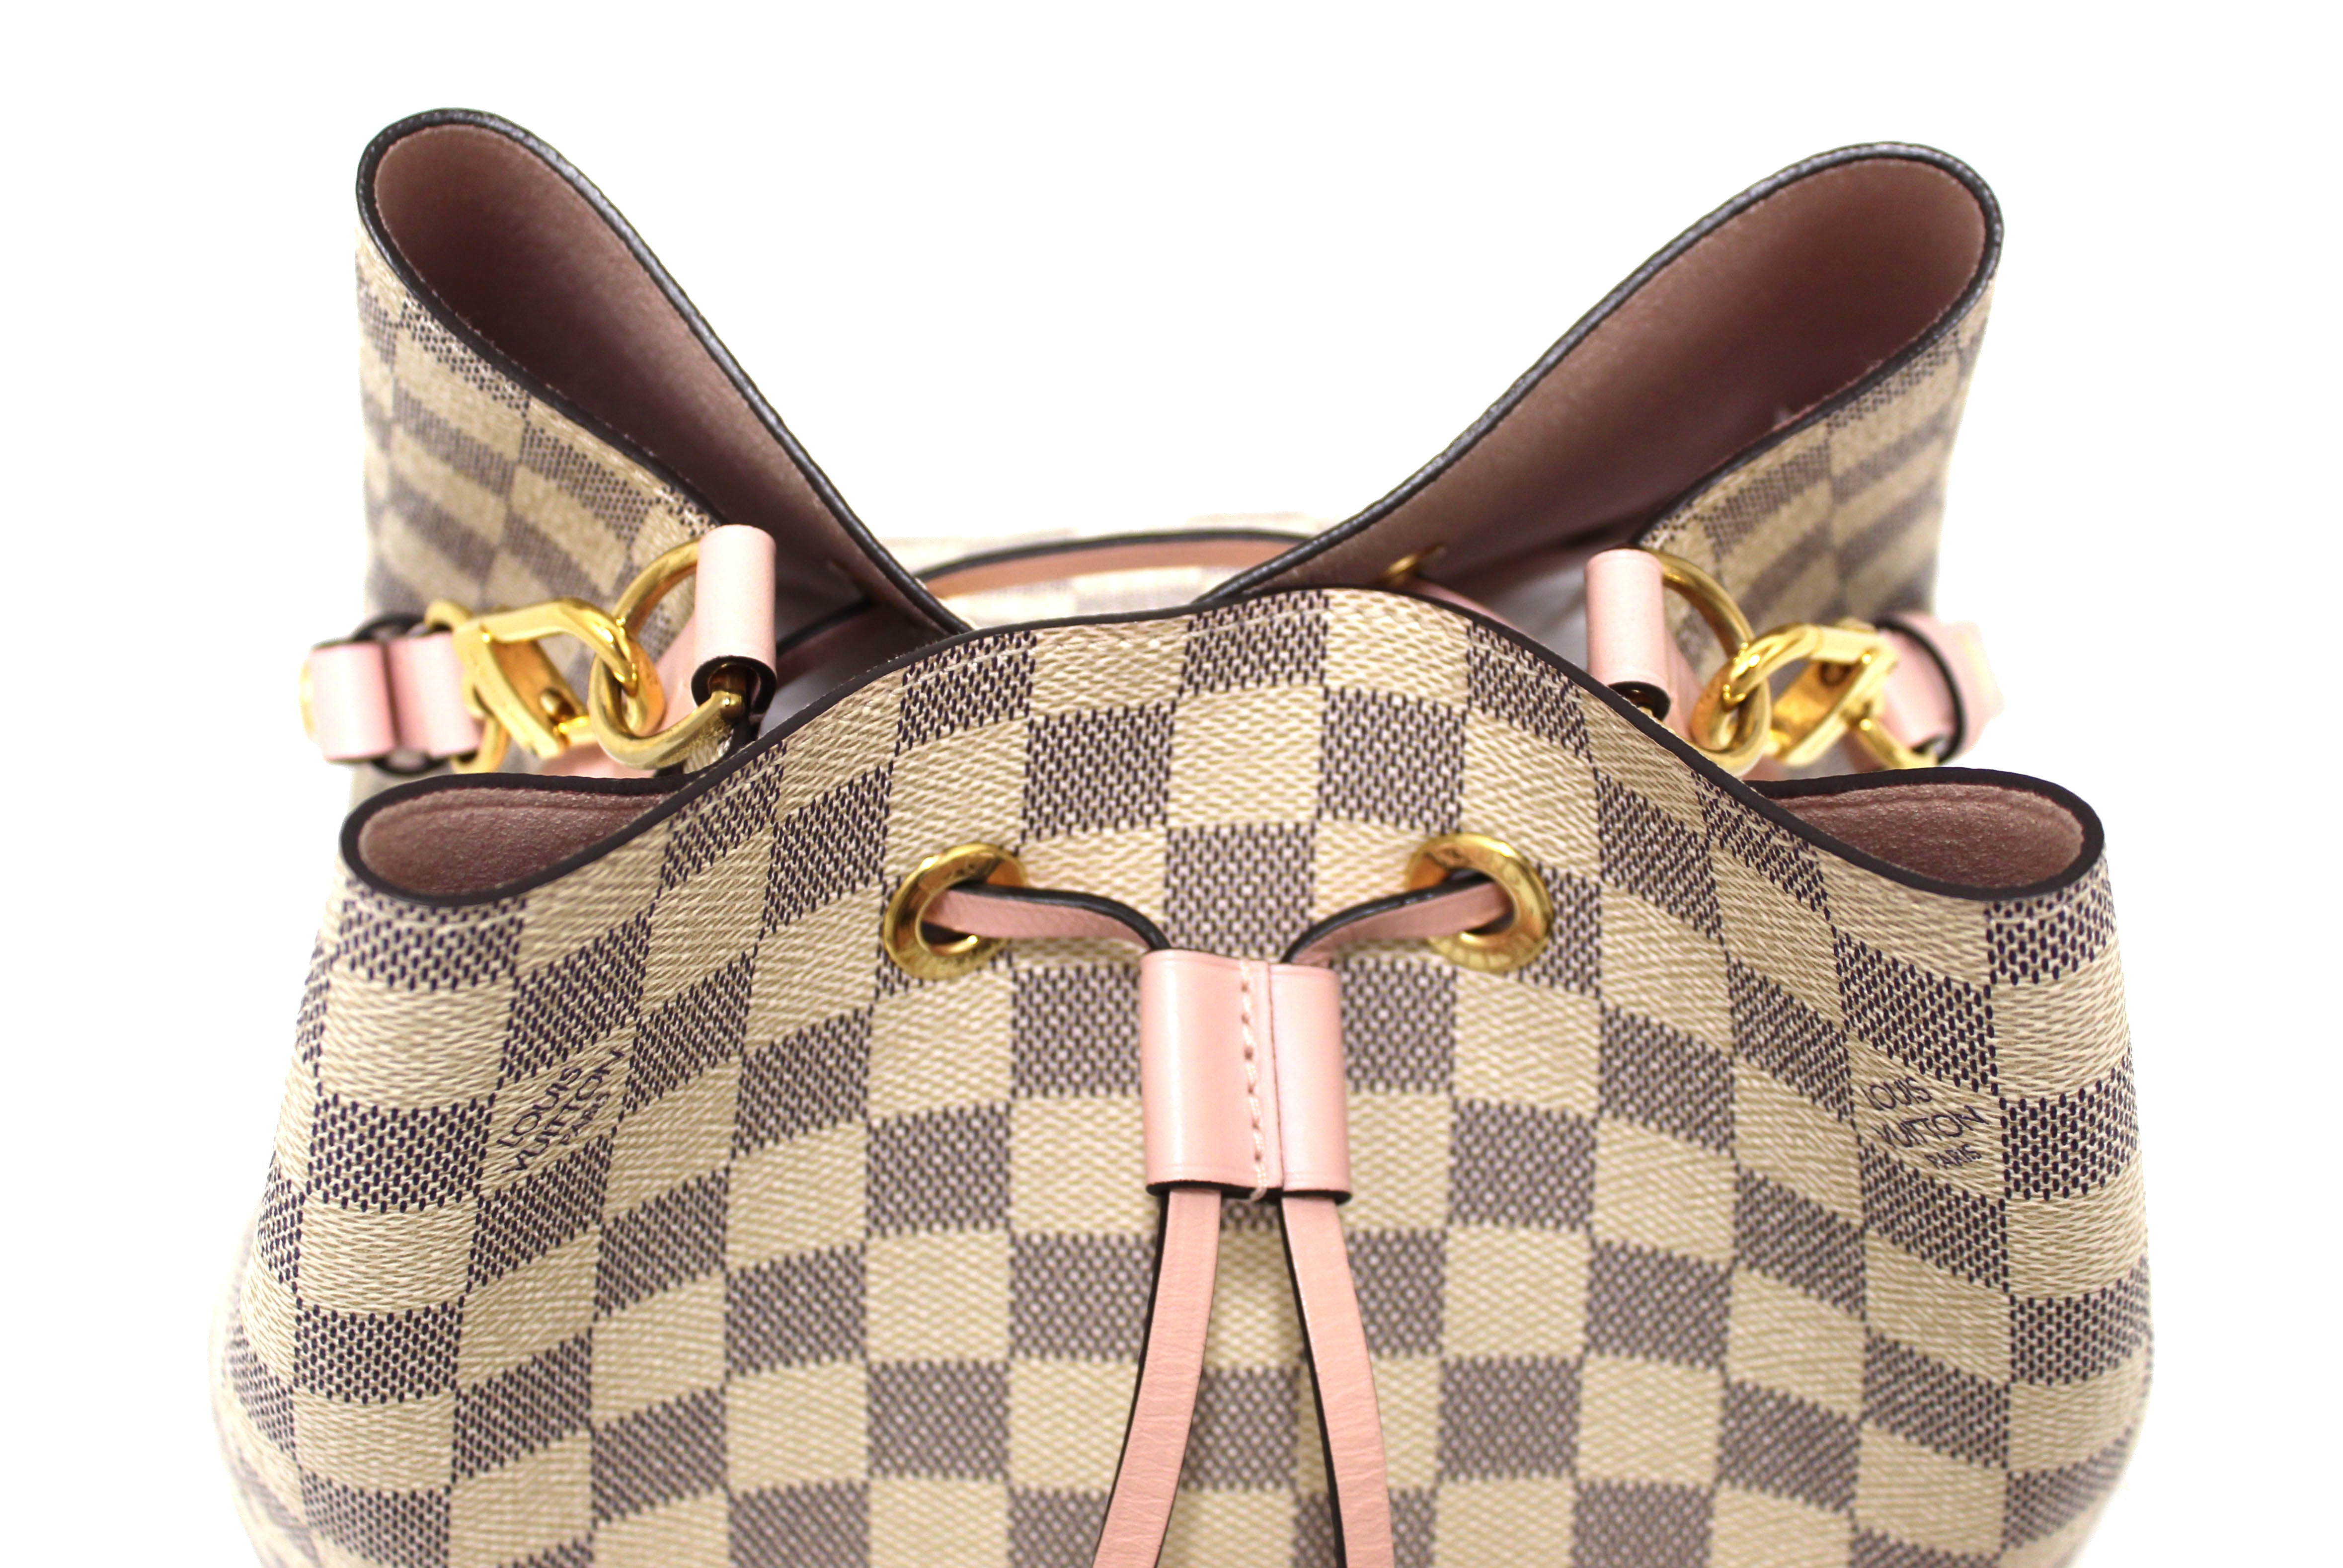 Authentic Louis Vuitton Damier Azur NeoNoe MM Shoulder Bag